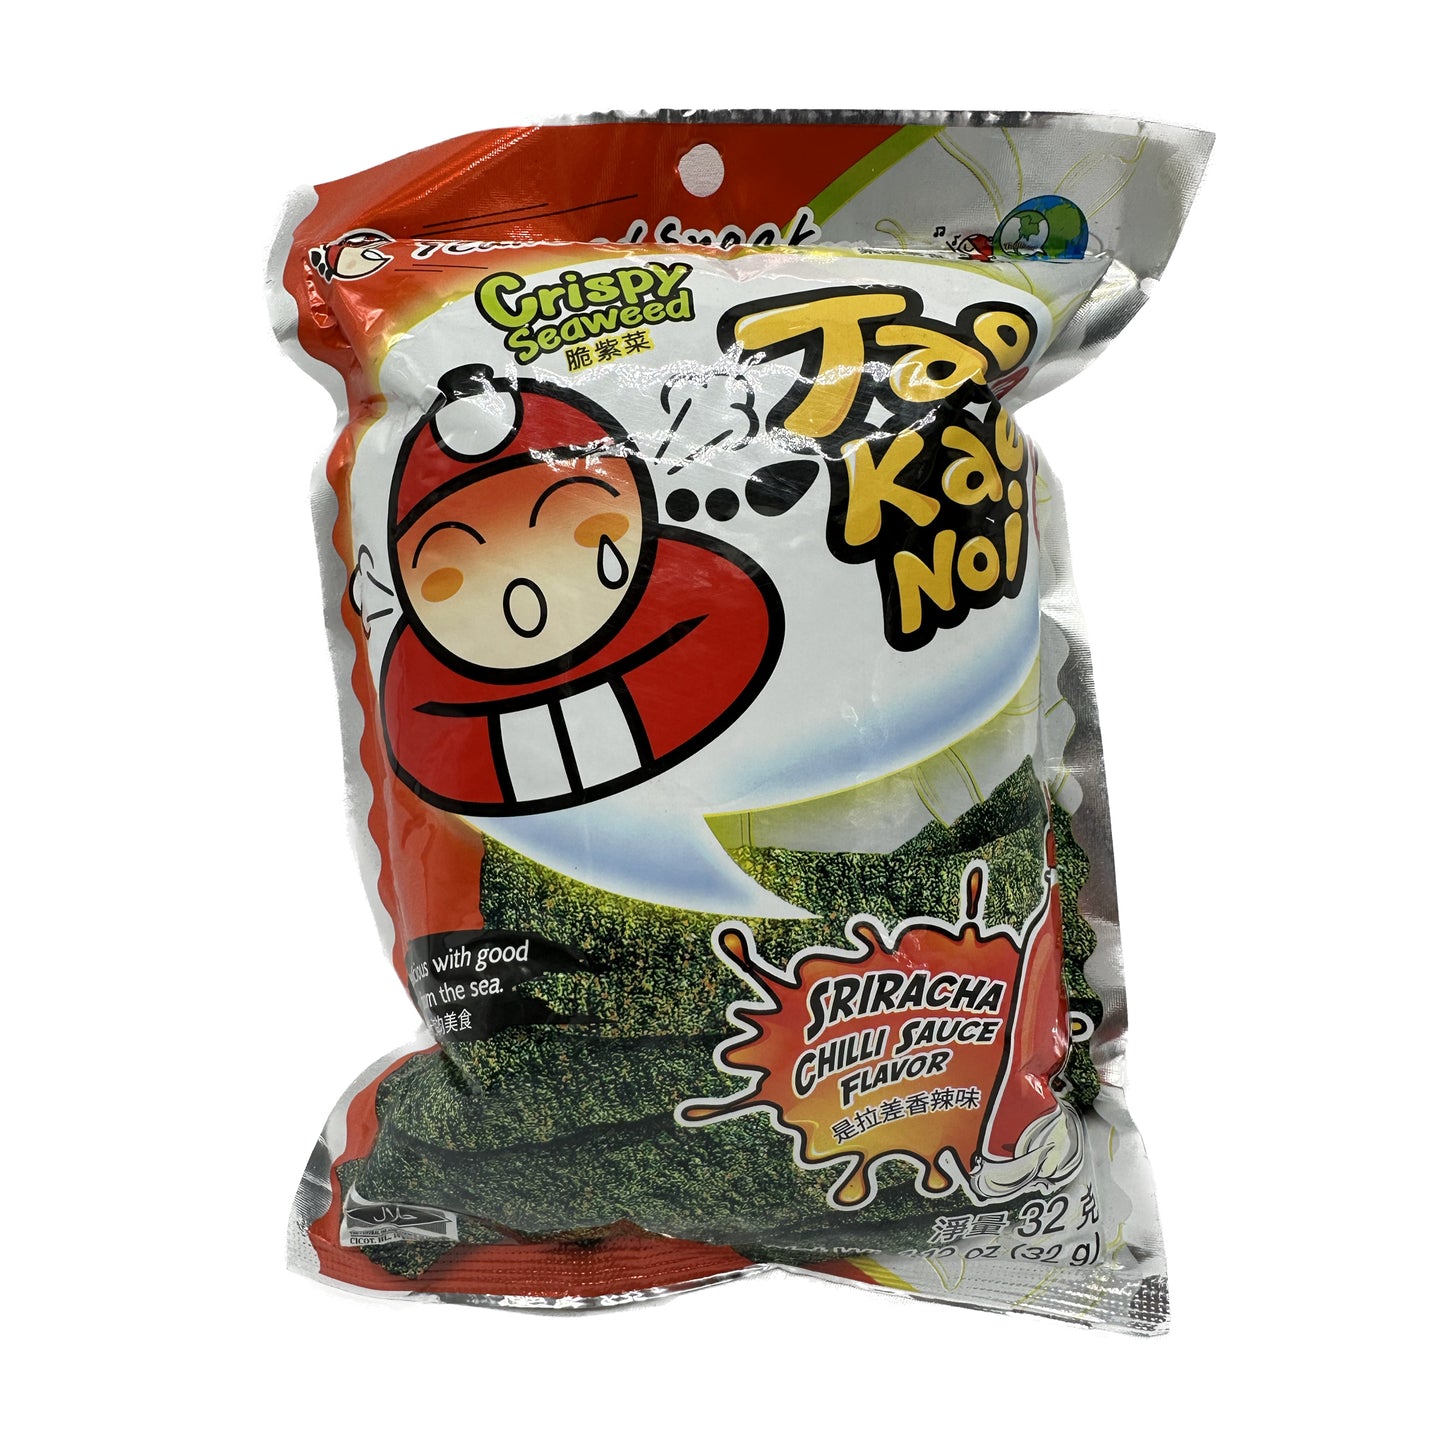 Taokaenoi Crispy Seaweed เถ้าแก่น้อย - 32g & 24g